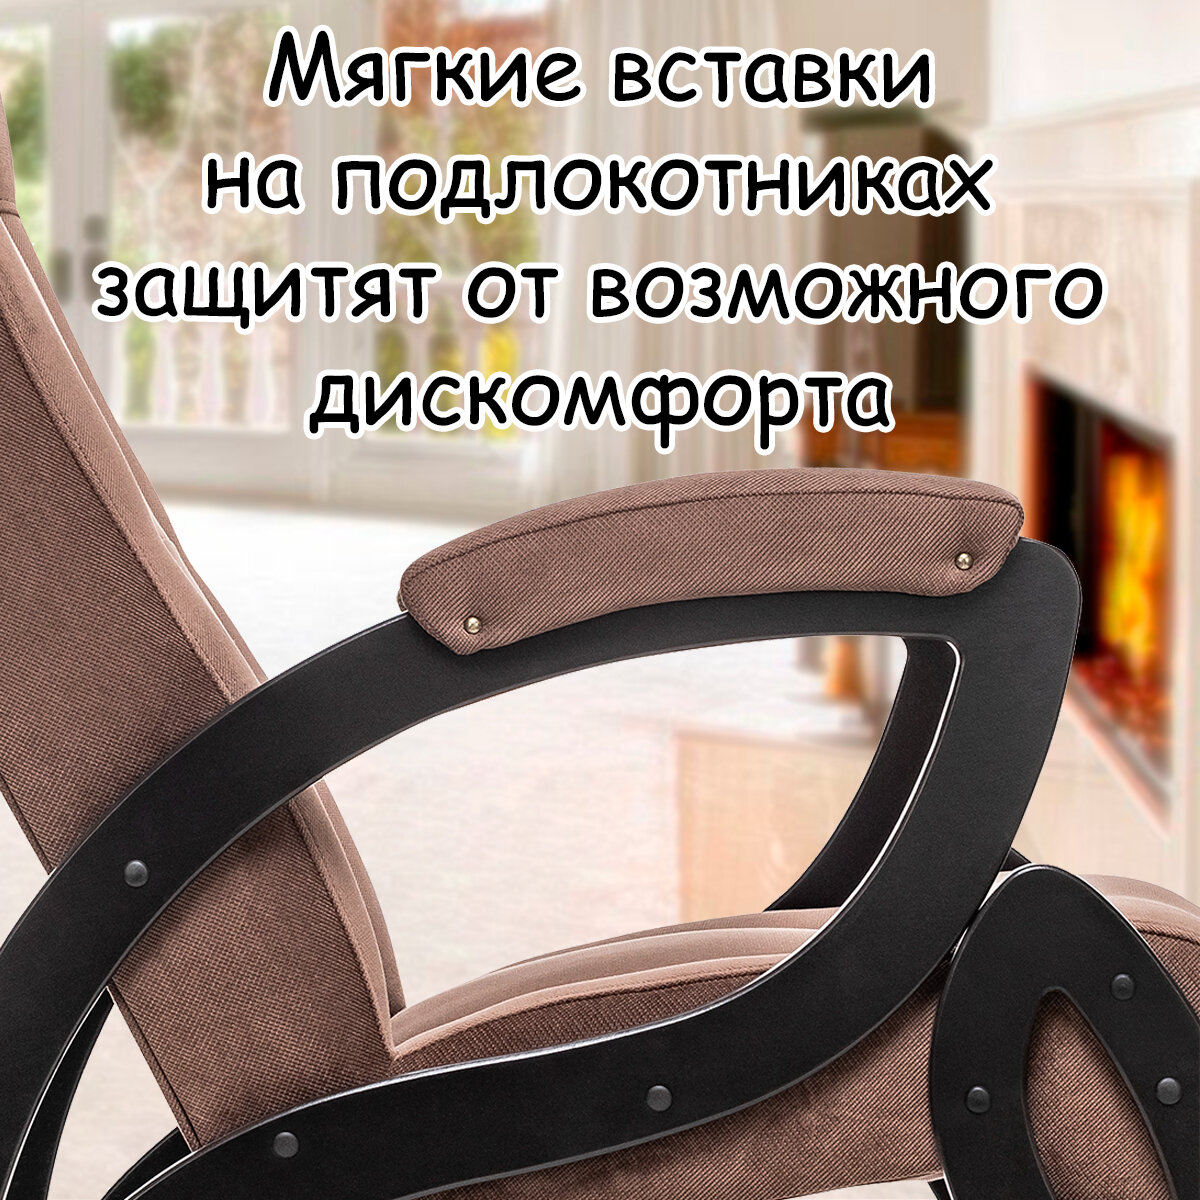 Кресло для взрослых 58.5х87х99 см, модель 51, verona, цвет: Brown (коричневый), каркас: Venge (черный) - фотография № 5